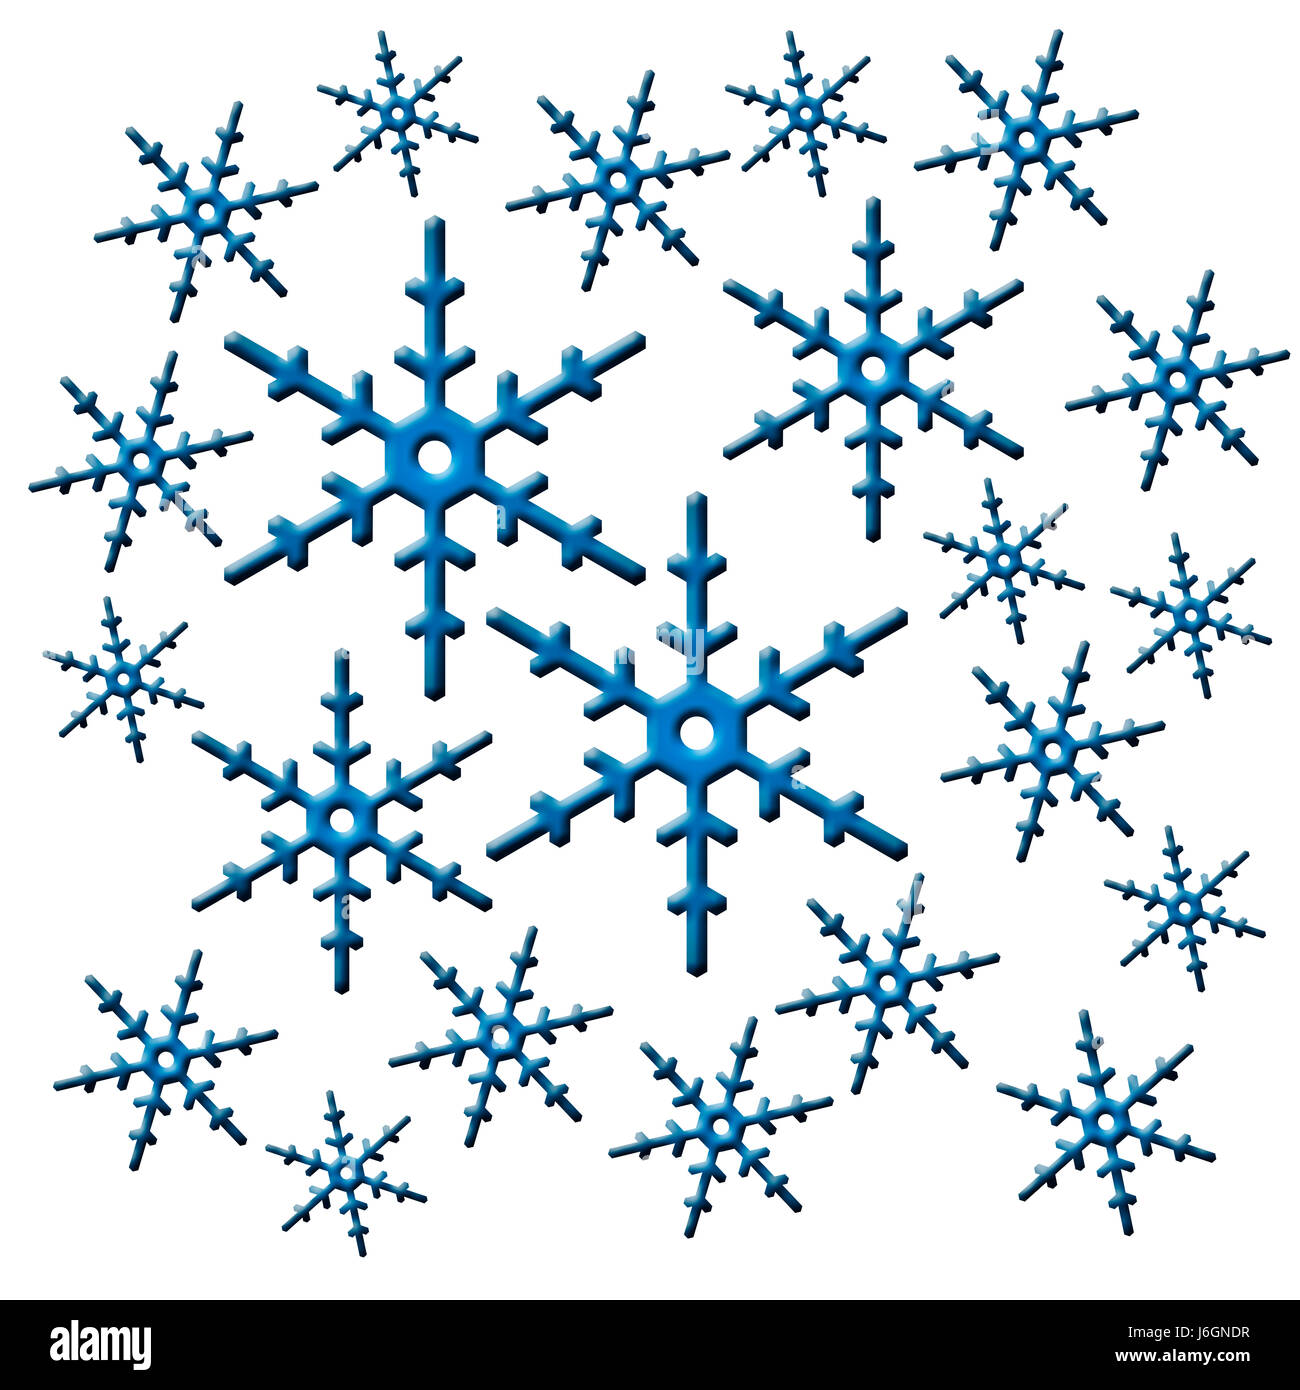 Inverno freddo icecold fiocco di neve fiocco di neve grafico simbolico pittogramma Foto Stock